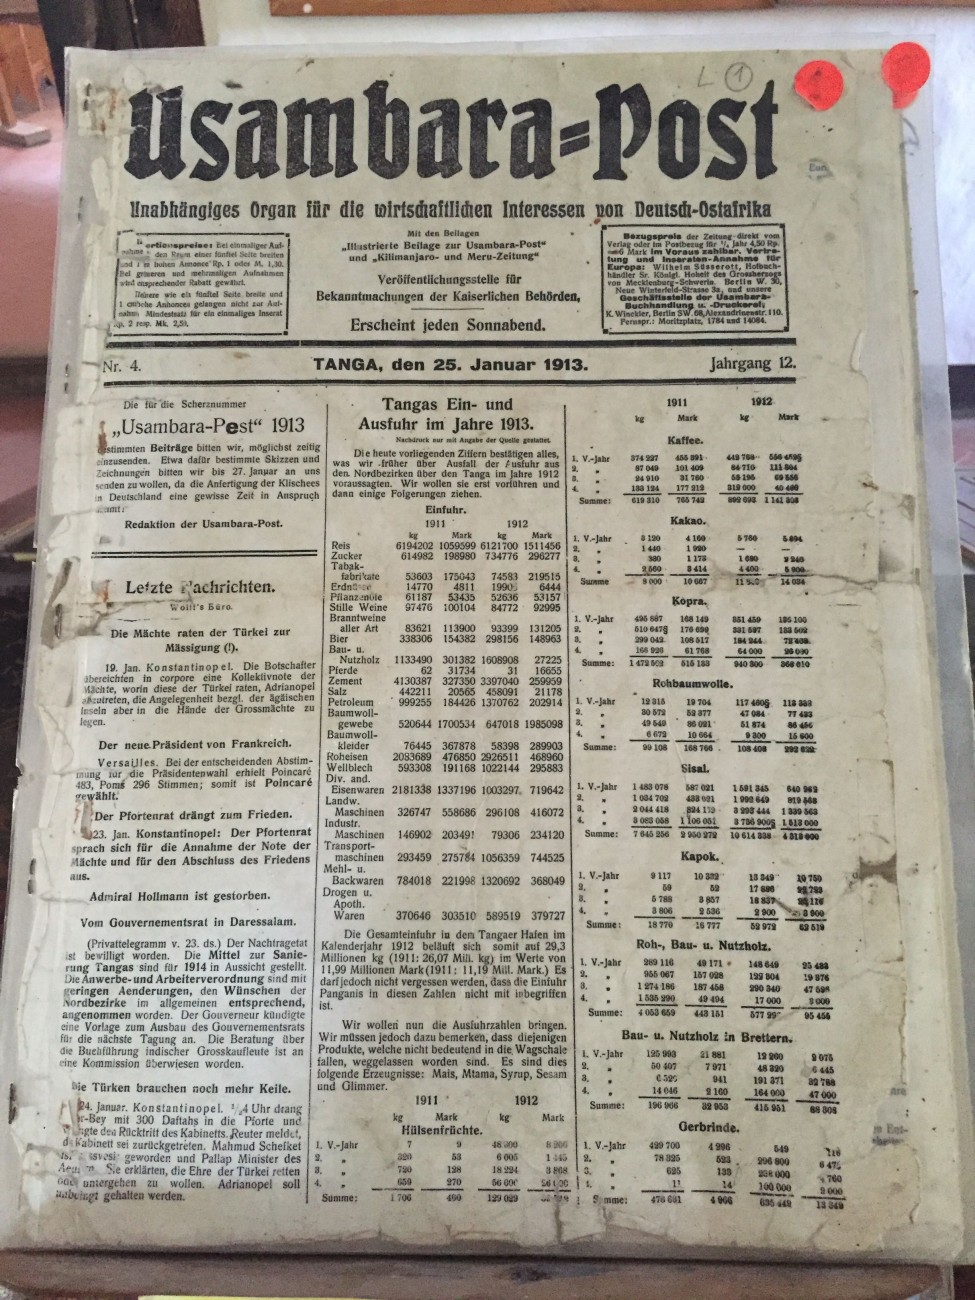 Das Wall Street von vor 100 Jahren: Die »Usambara Post« listet die Rohstoffpreise auf